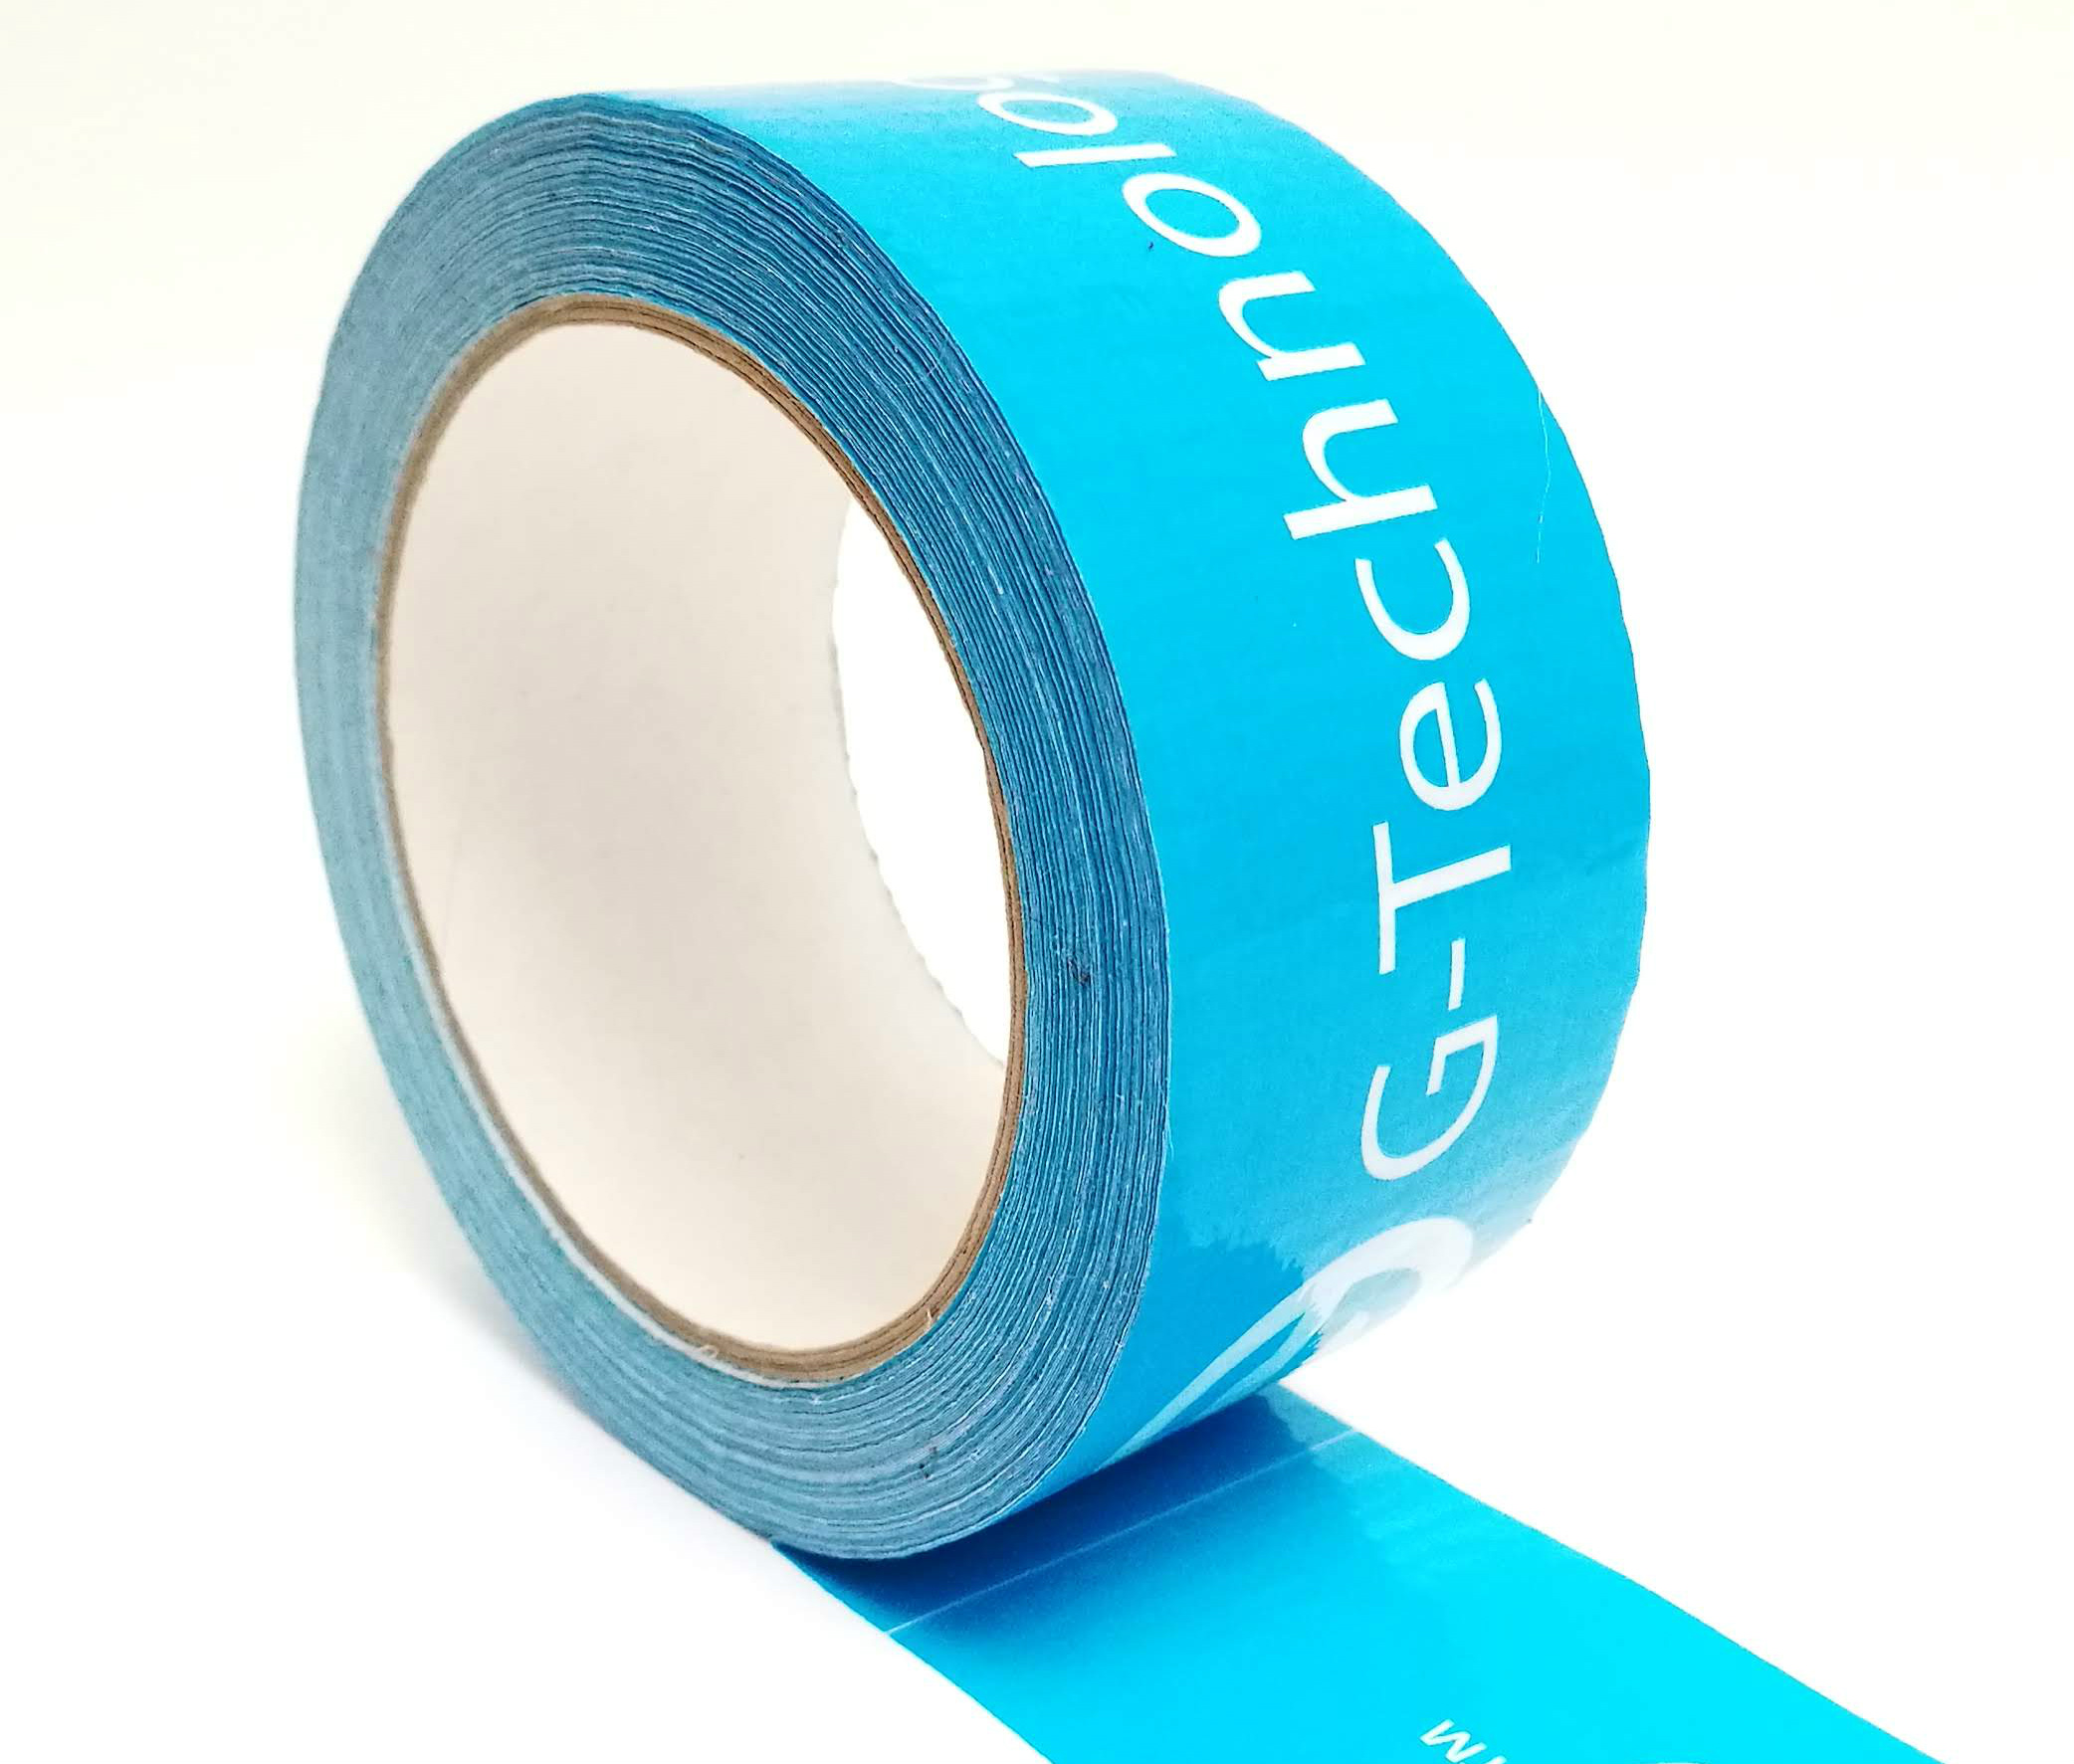 Novinka - potištěná textilní lepicí páska tzv. Duct tape nebo duck tape